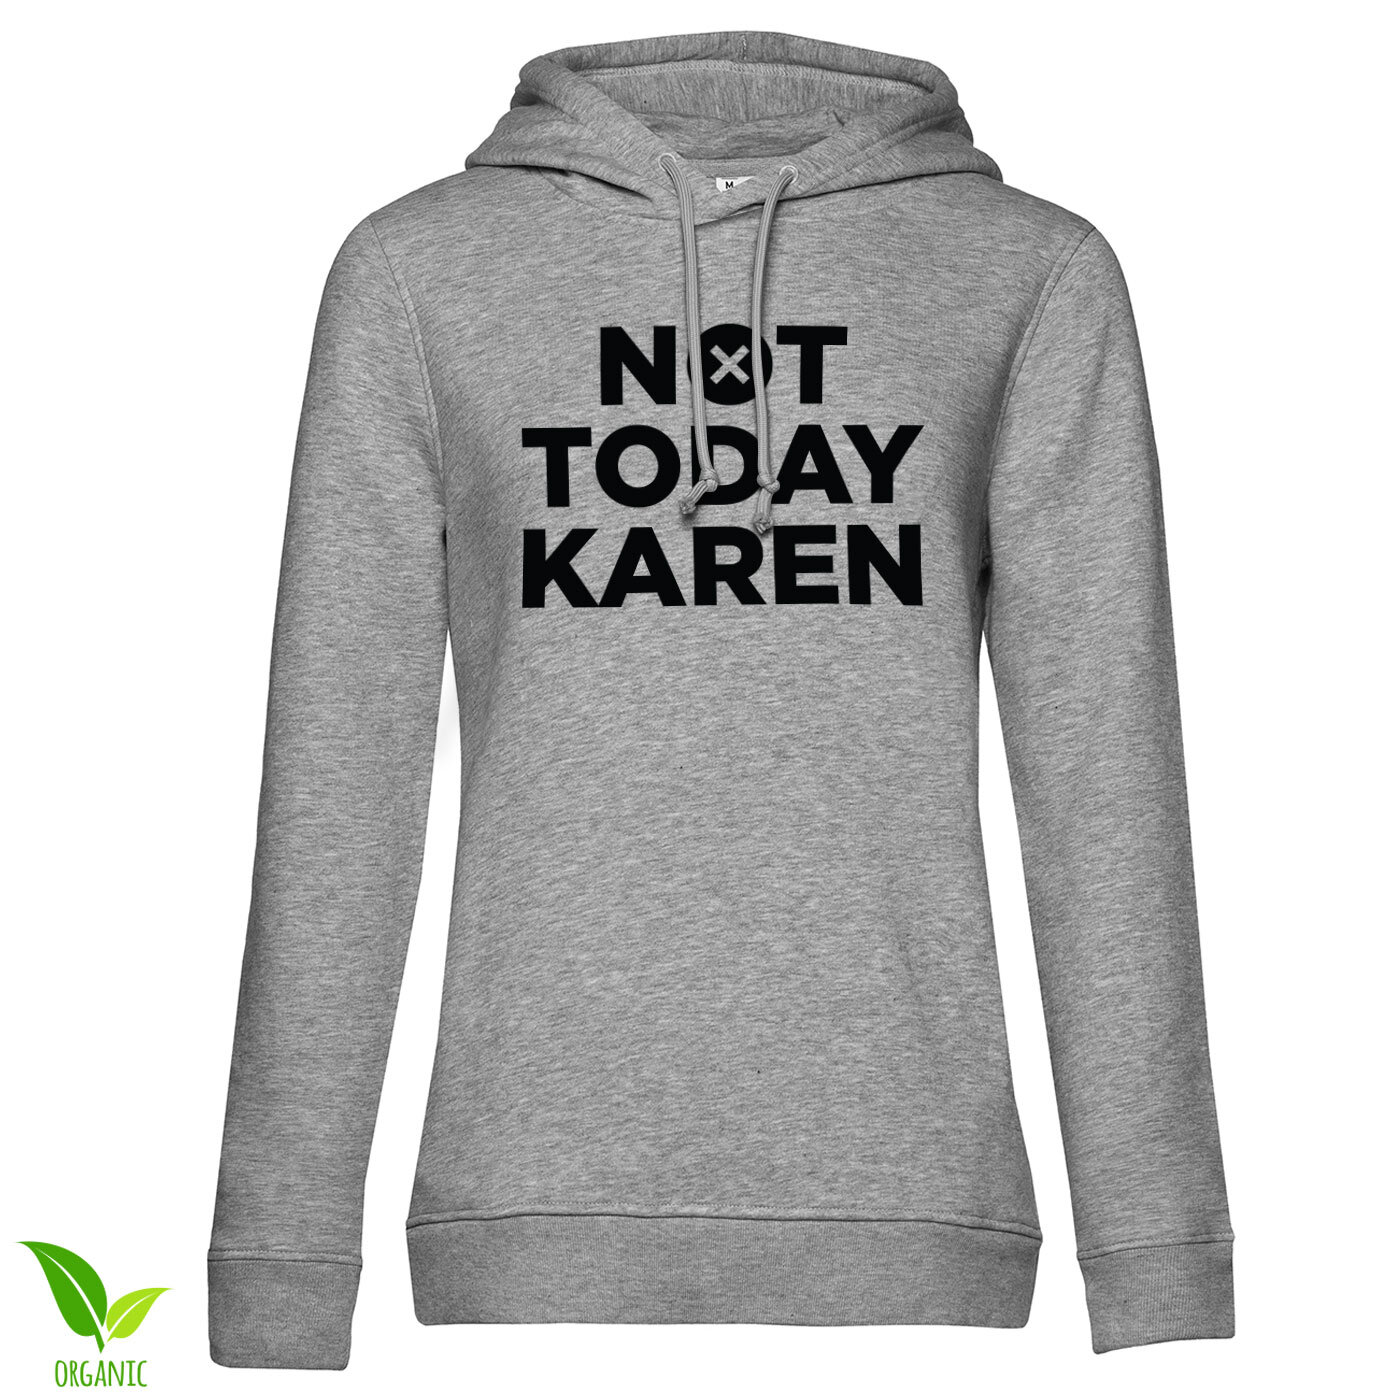 Not Today Karen Girls Hoodie - Shirtstore